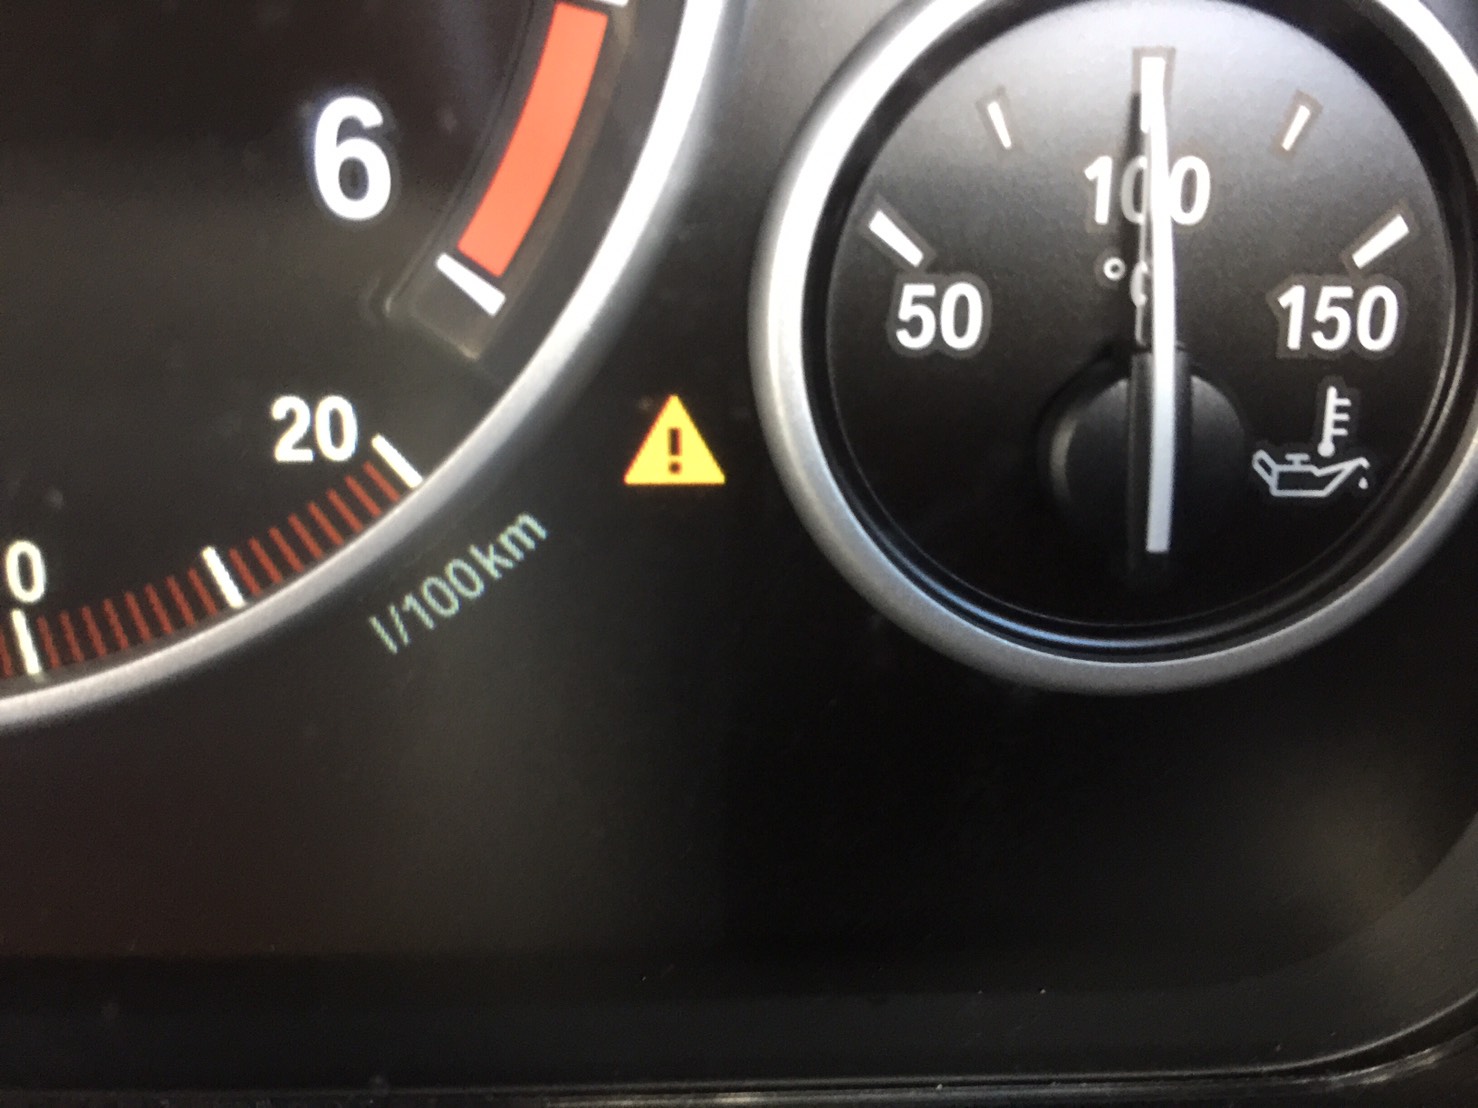 สัญญาณไฟรูปสามเหลี่ยมสีเหลืองบนหน้าปัดรถของ BMW X3 นี่คือ